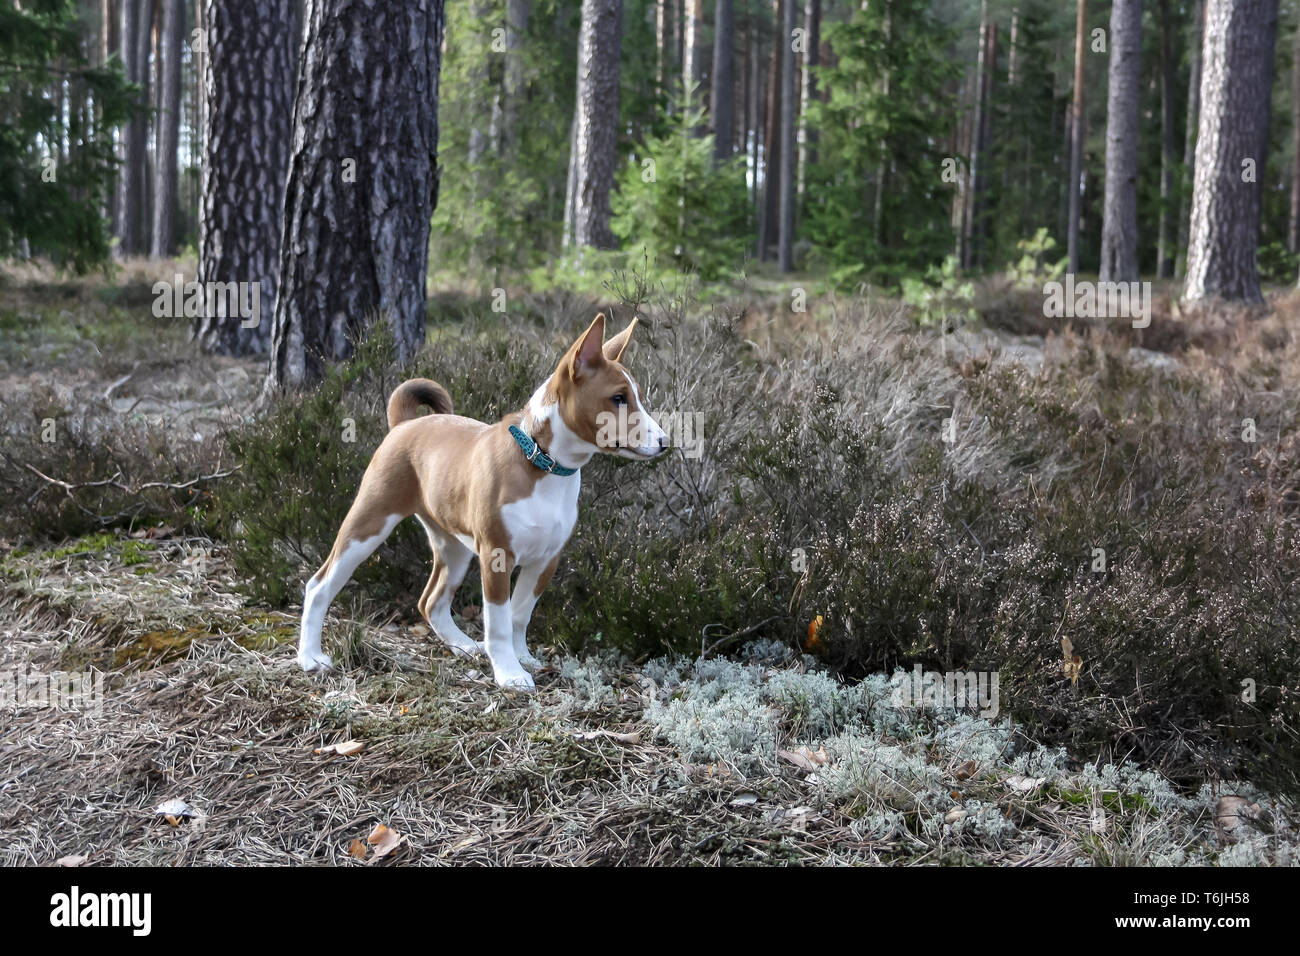 Ein Hund der Rasse Basenji mit kurzen Haaren weißer und roter Farbe, draußen stehen mit Wald im Hintergrund auf Sommer Stockfoto